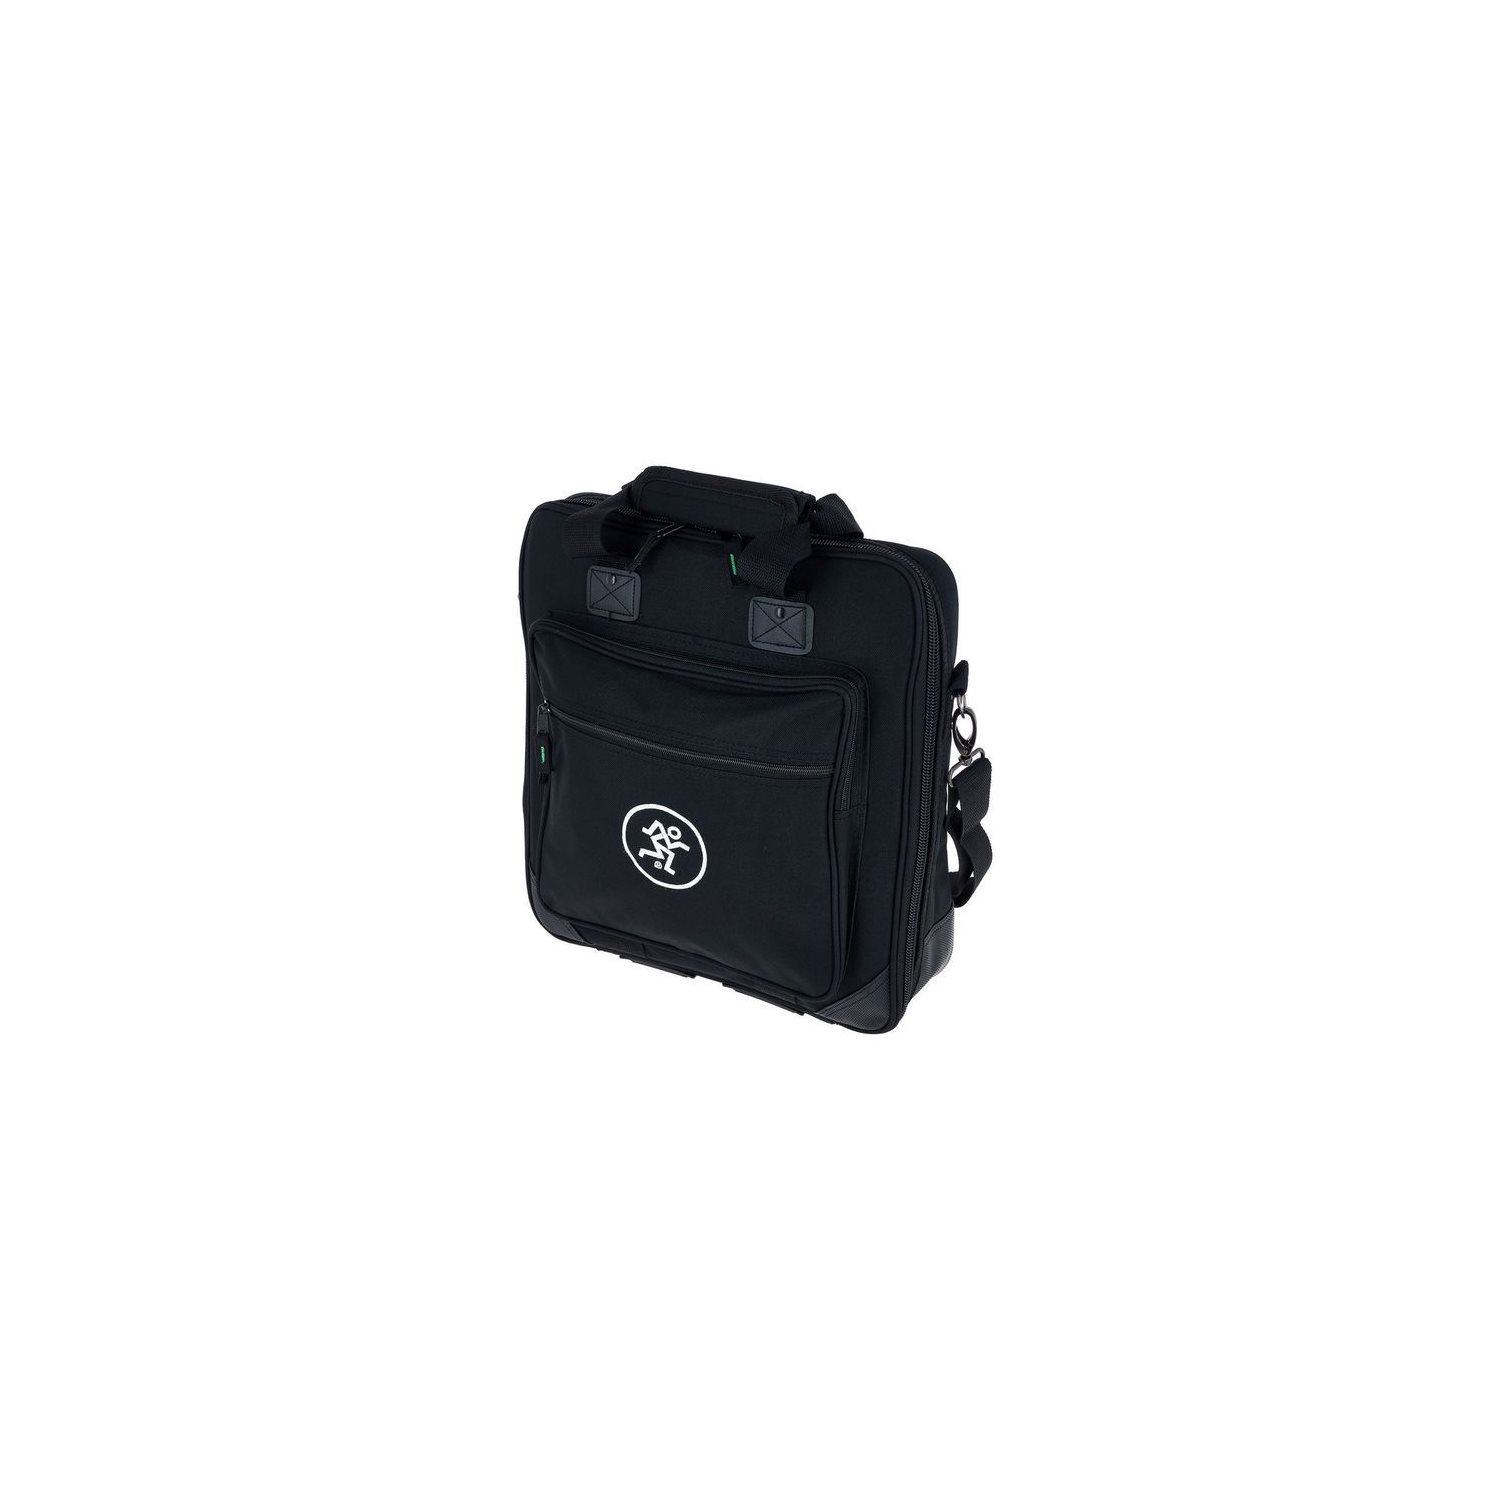 MACKIE - Carry Bag for ProFX10v3 MIXER - BLACK